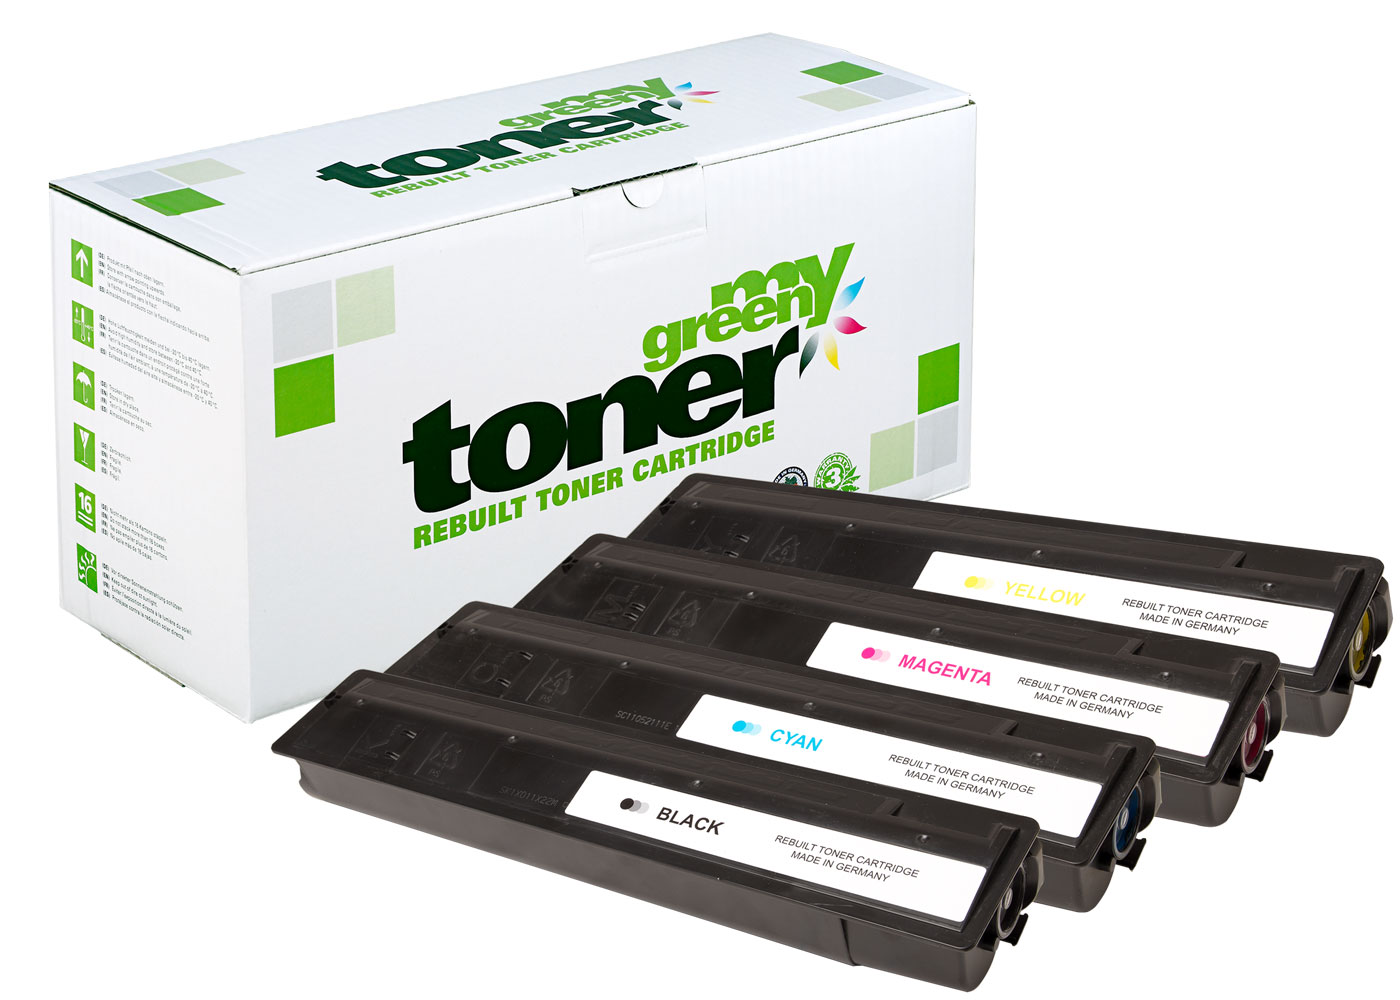 Rebuilt toner cartridge for Toshiba E-Studio 2515/3015 a. o.